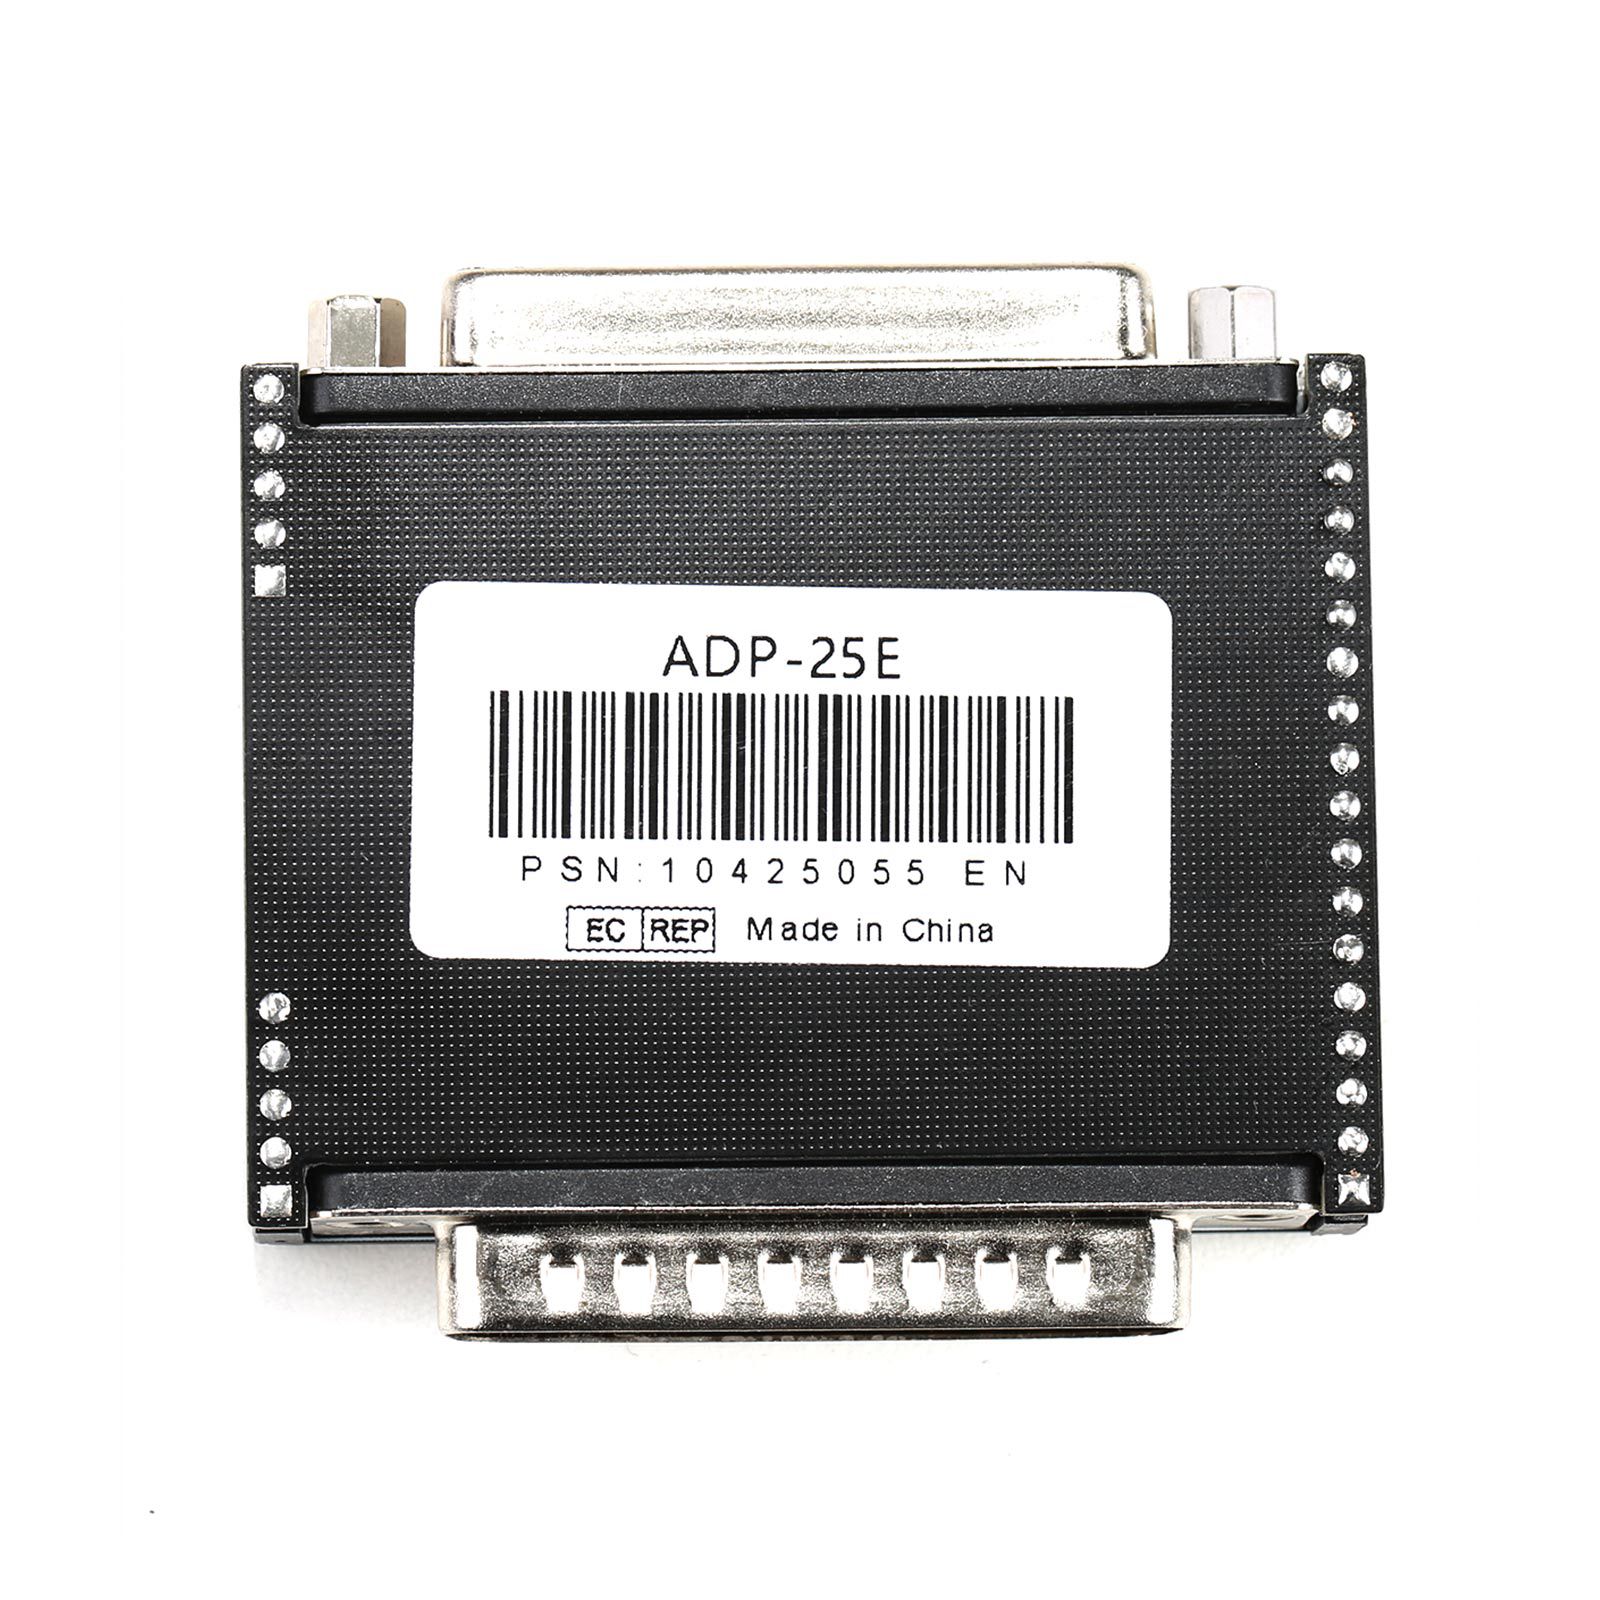 El conector lonsdor super ADP 8a / 4a para la programación de teclas de proximidad Toyota Lexus se utiliza con el lonsdor k518ise k518s